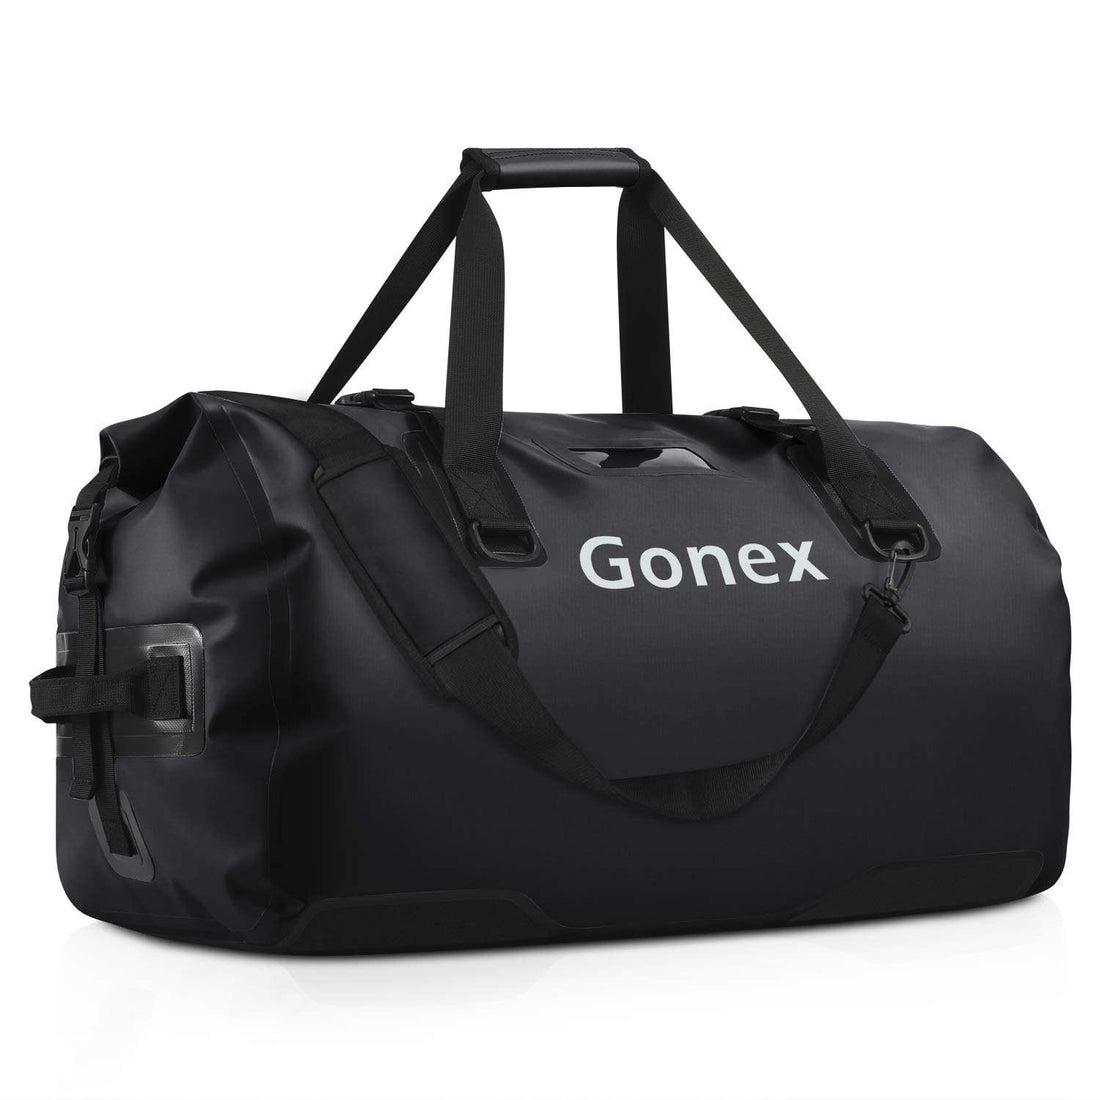 Gonex dry bag for kayaking